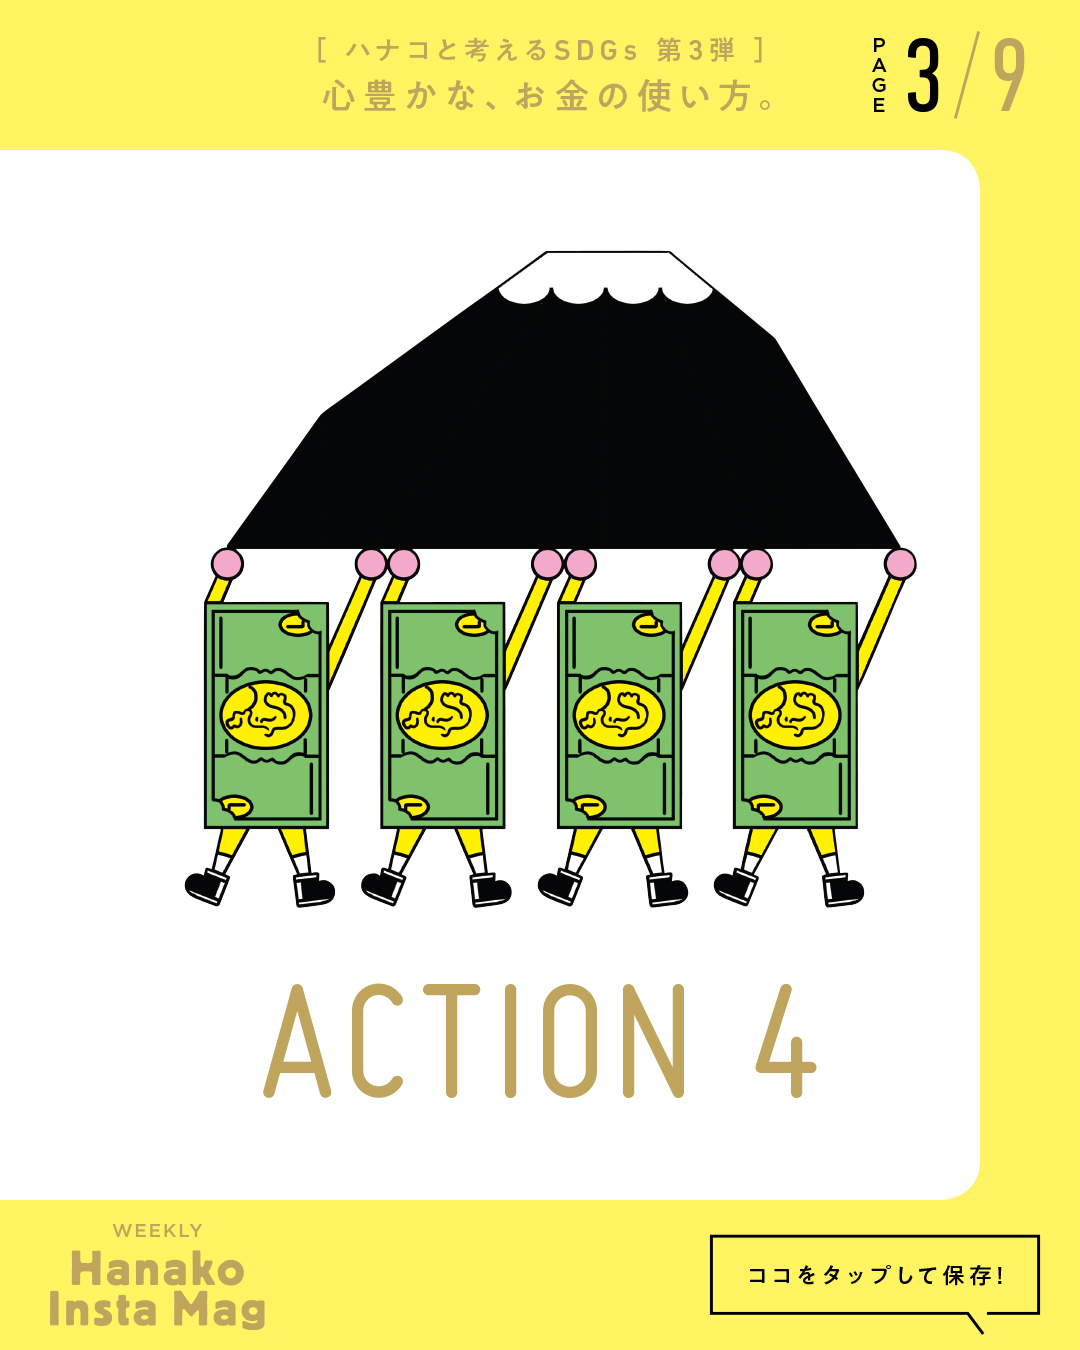 SDGs#3_sekai_action#4-3